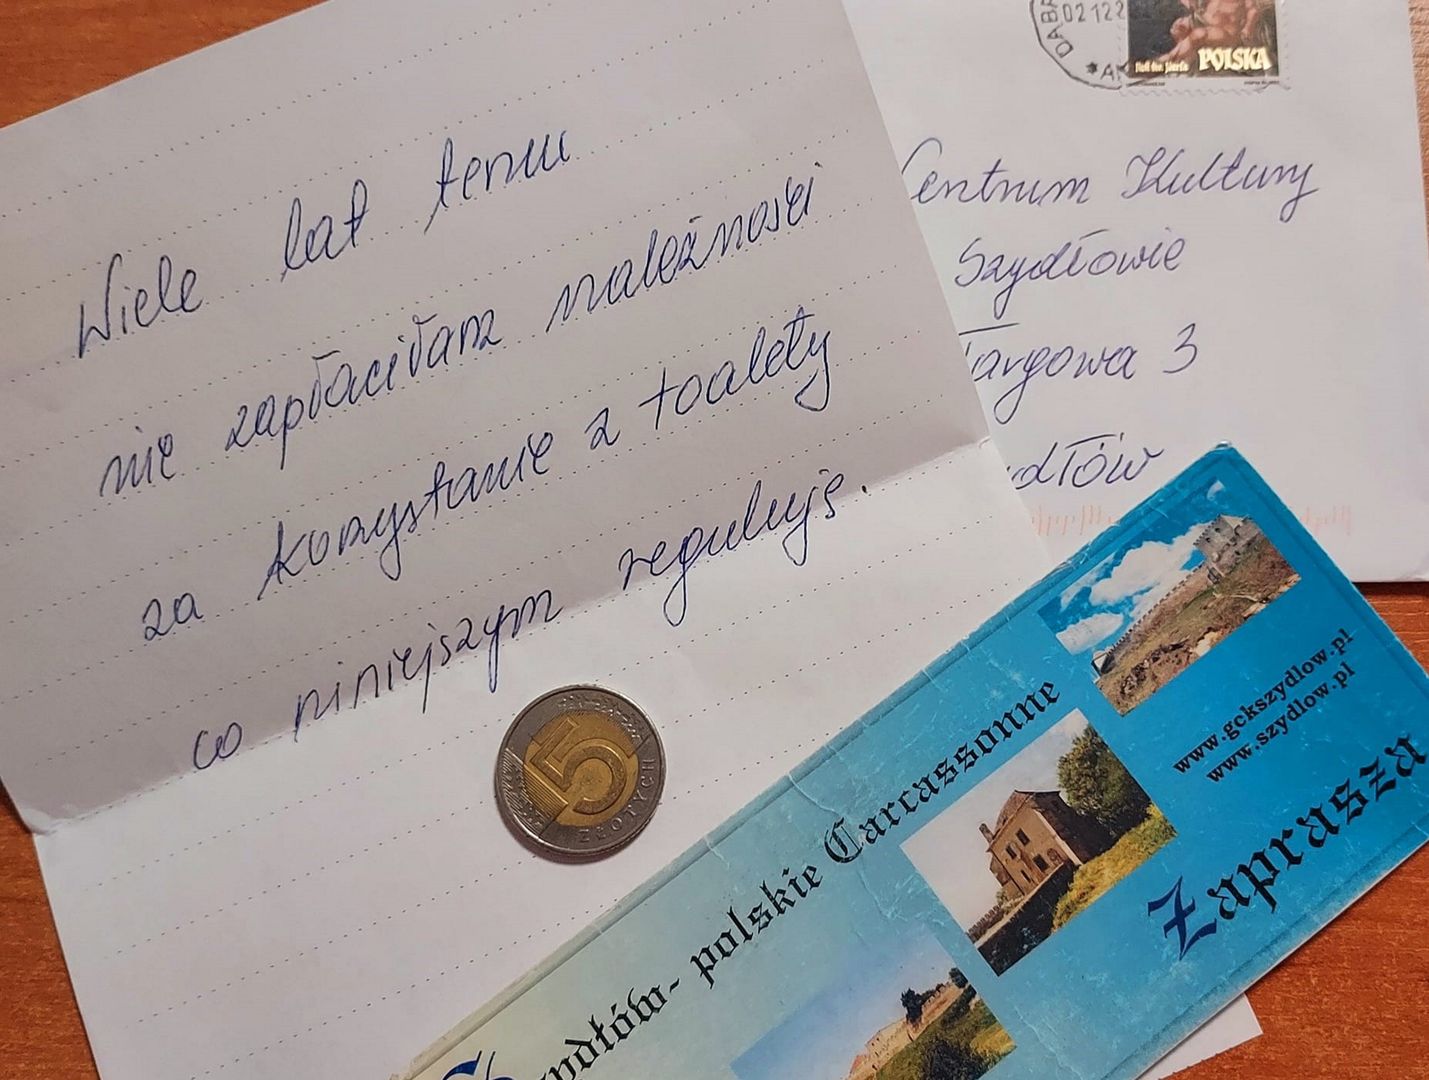 Nietypowy list polskiej turystki. Do koperty włożyła 5 złotych